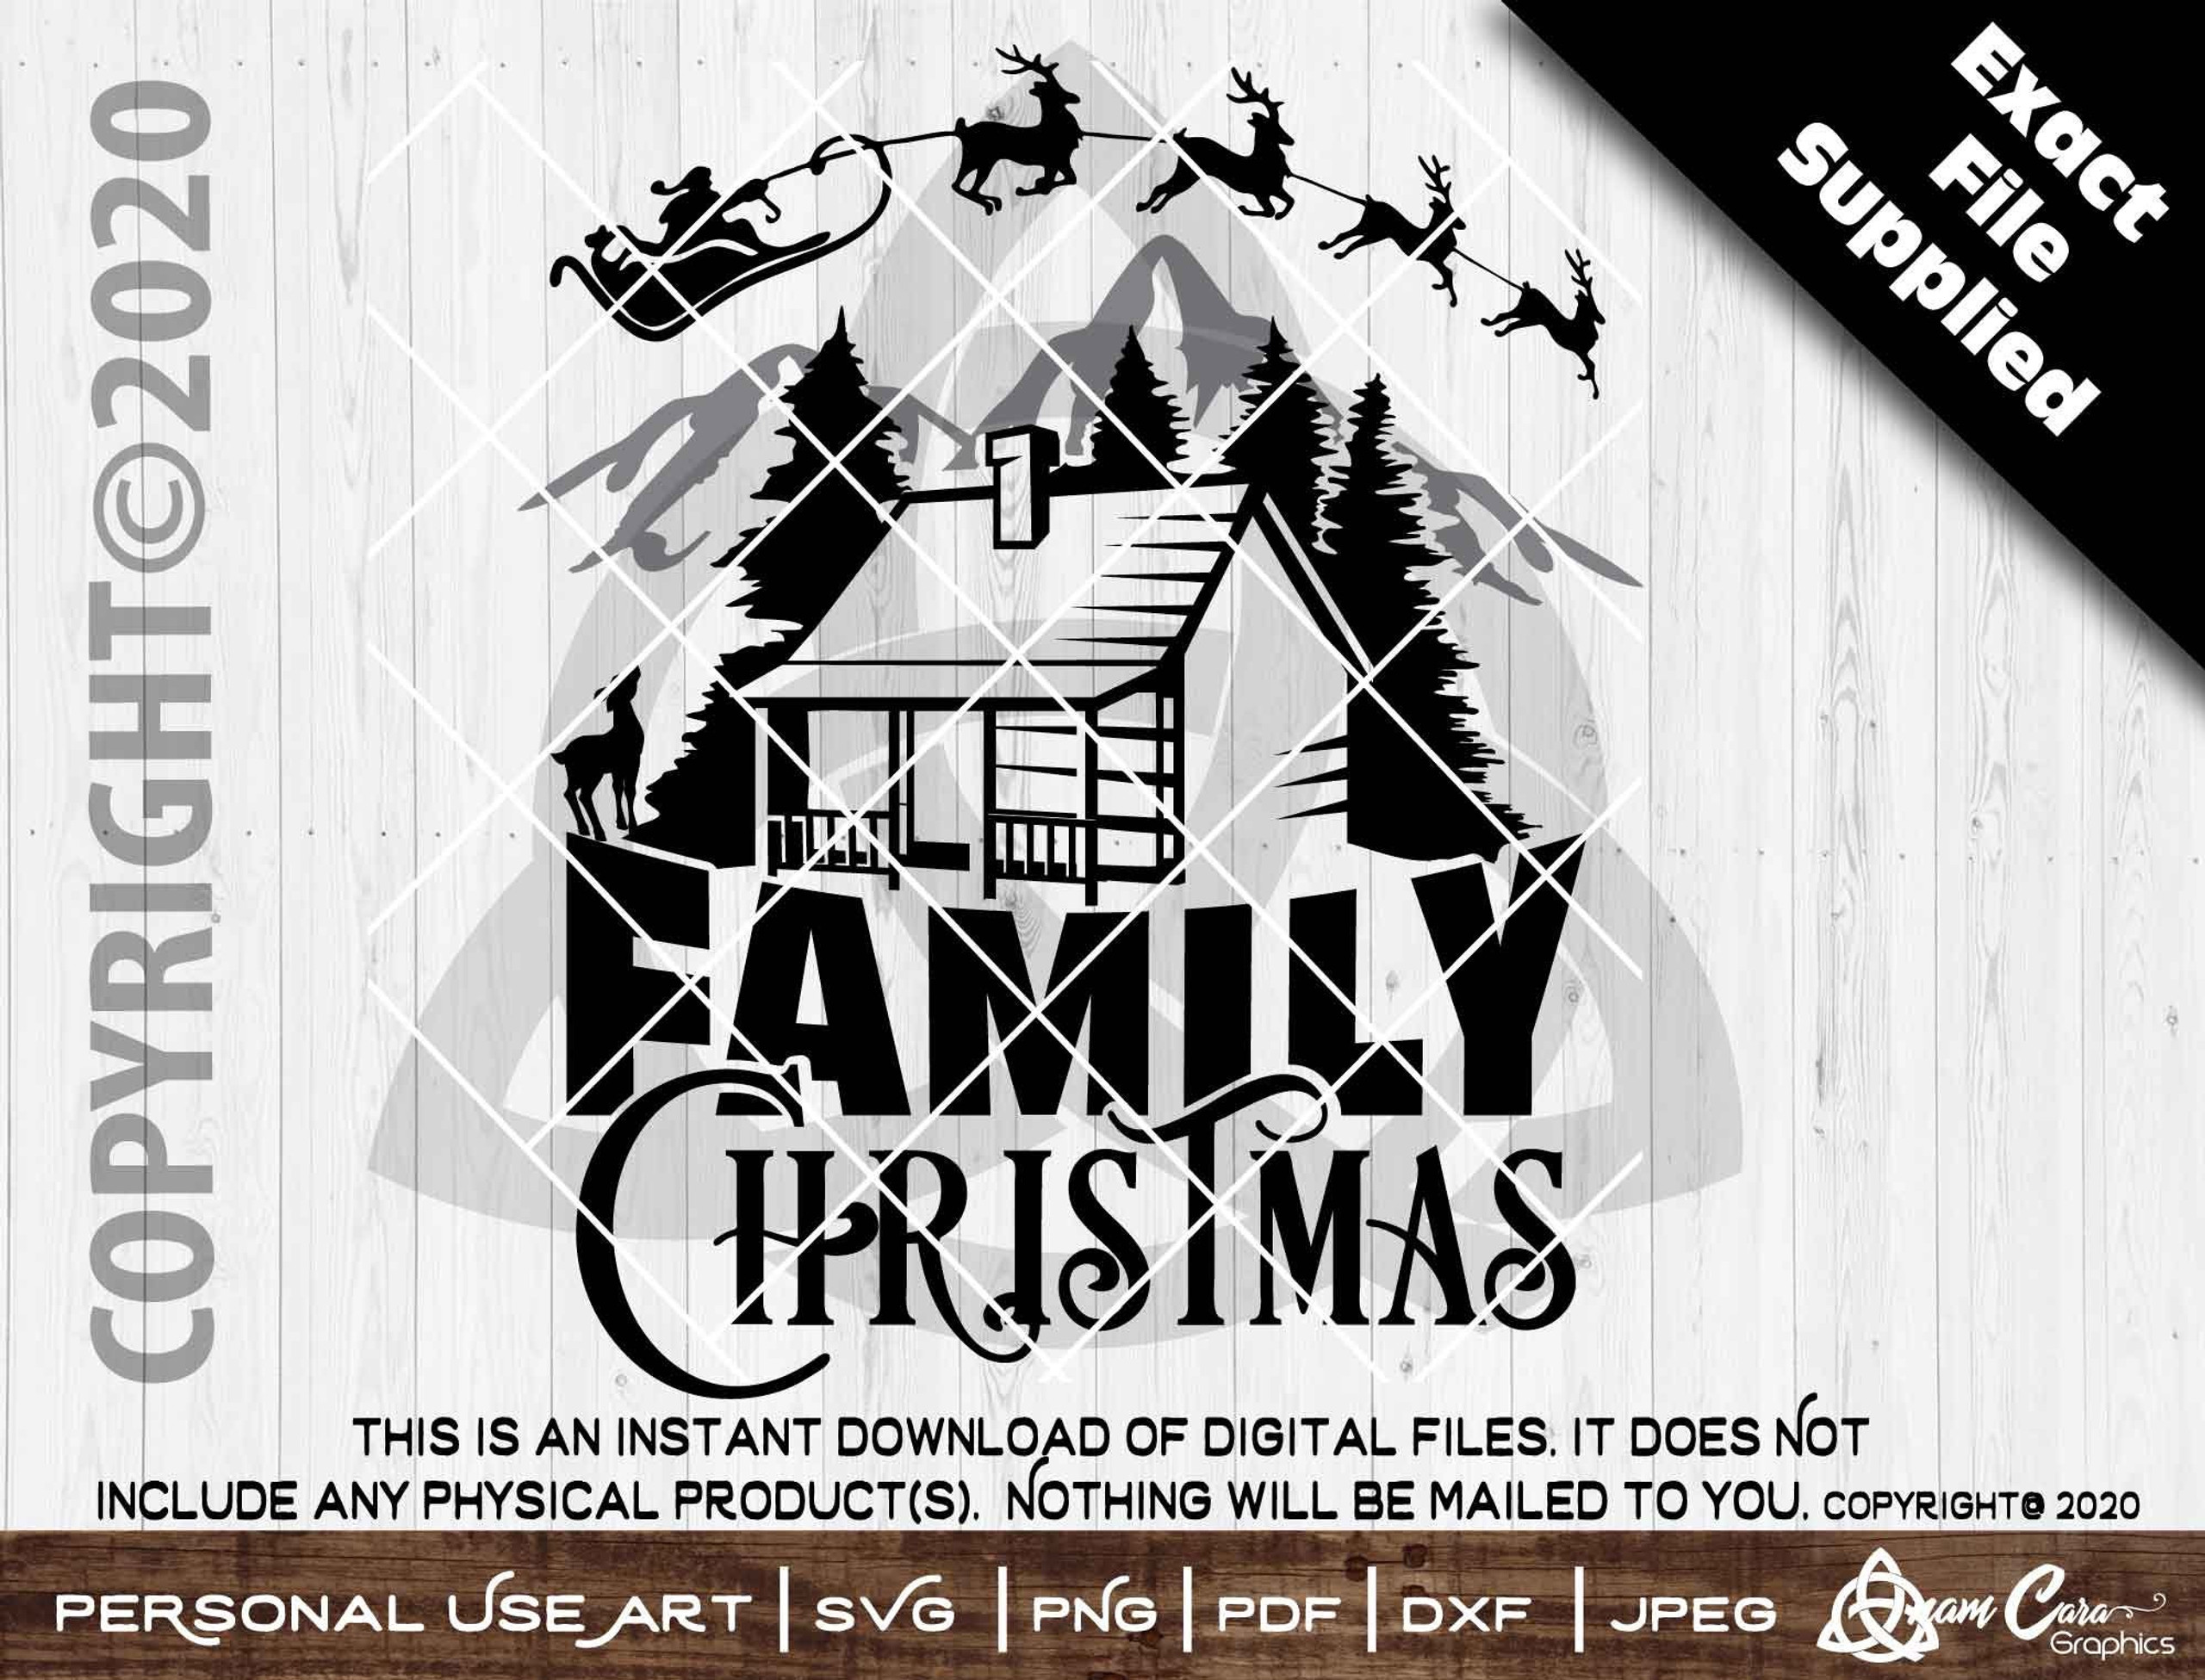 Family Christmas | SVG Cut or Print Art| AnamCaraGraphics